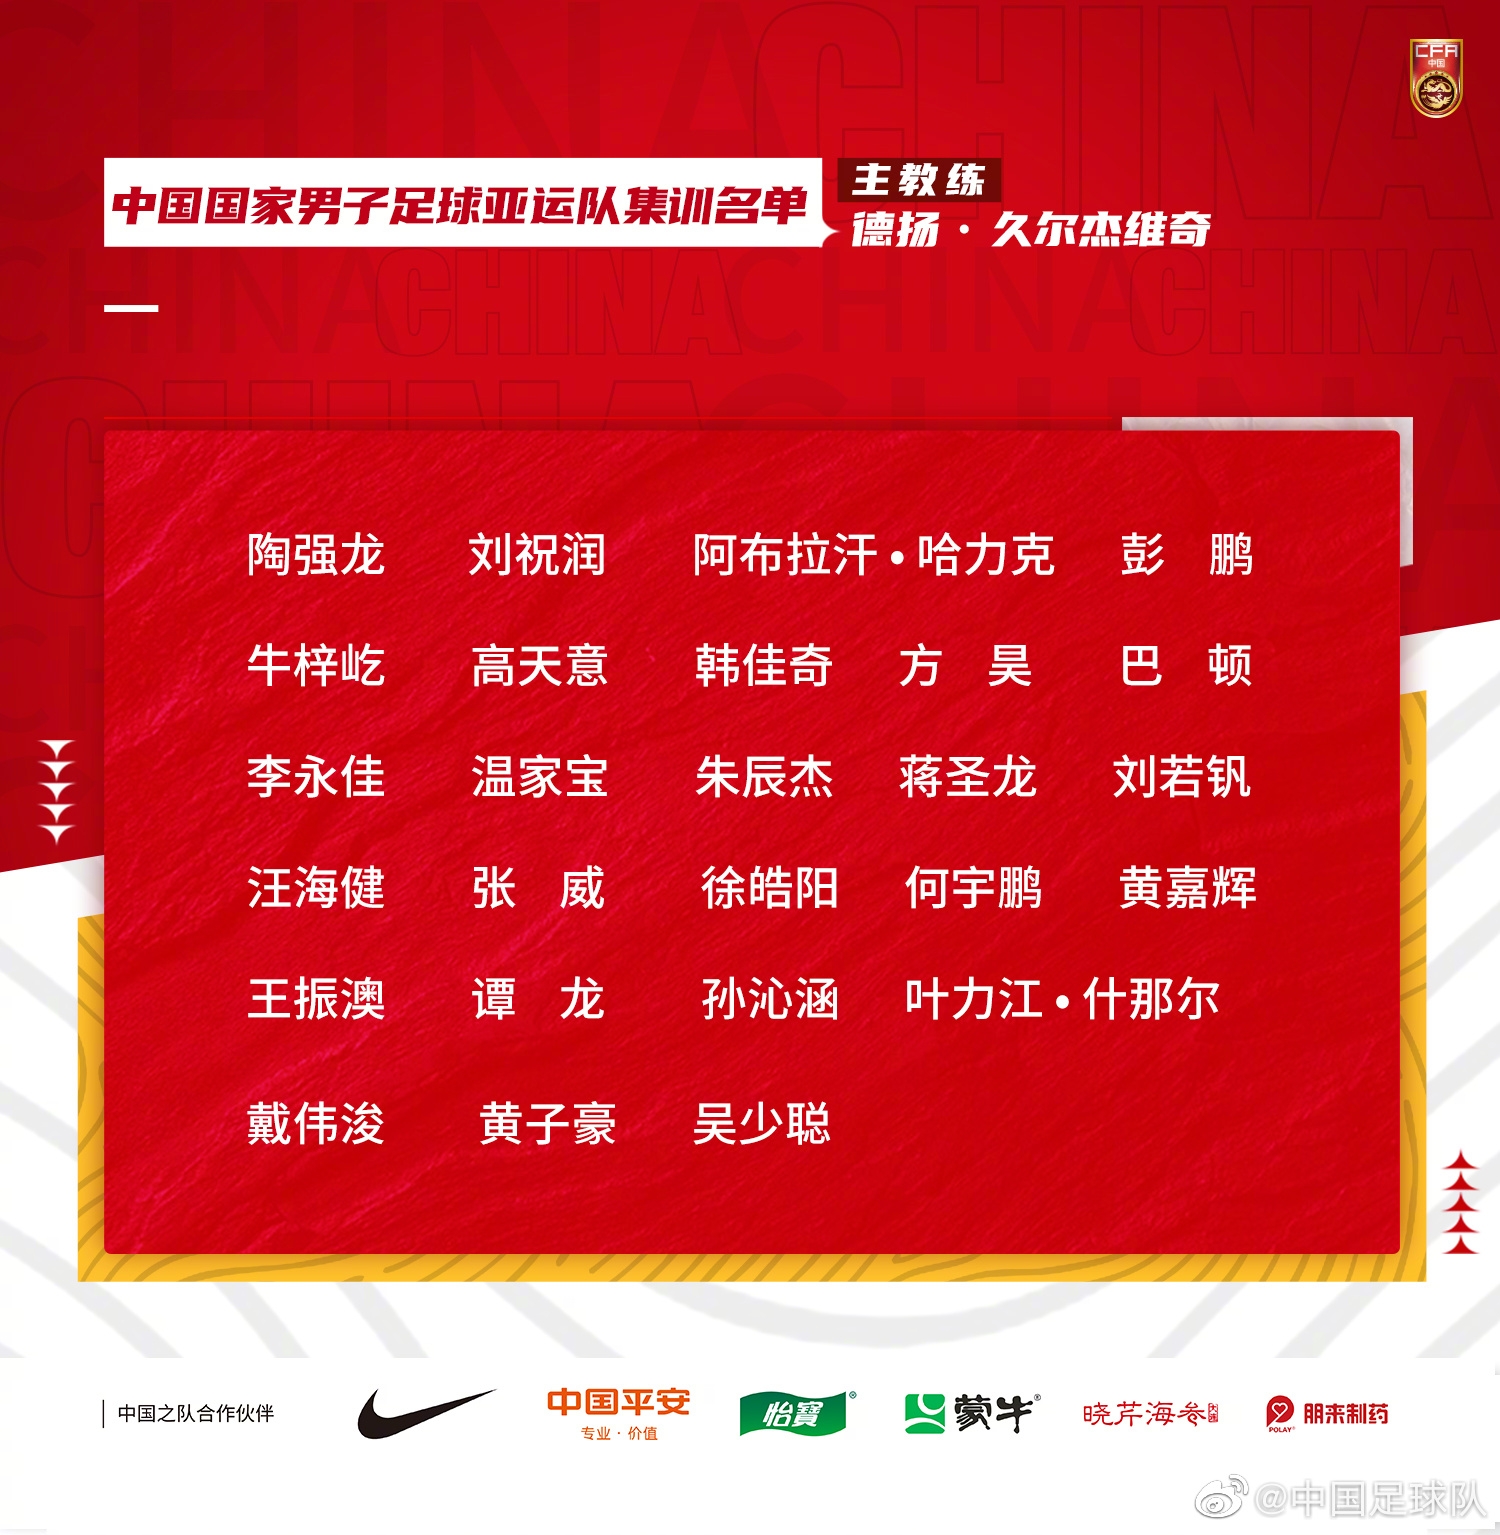 国家男子足球亚运队定于6月10日至20日赴浙江金华集训并参加比赛